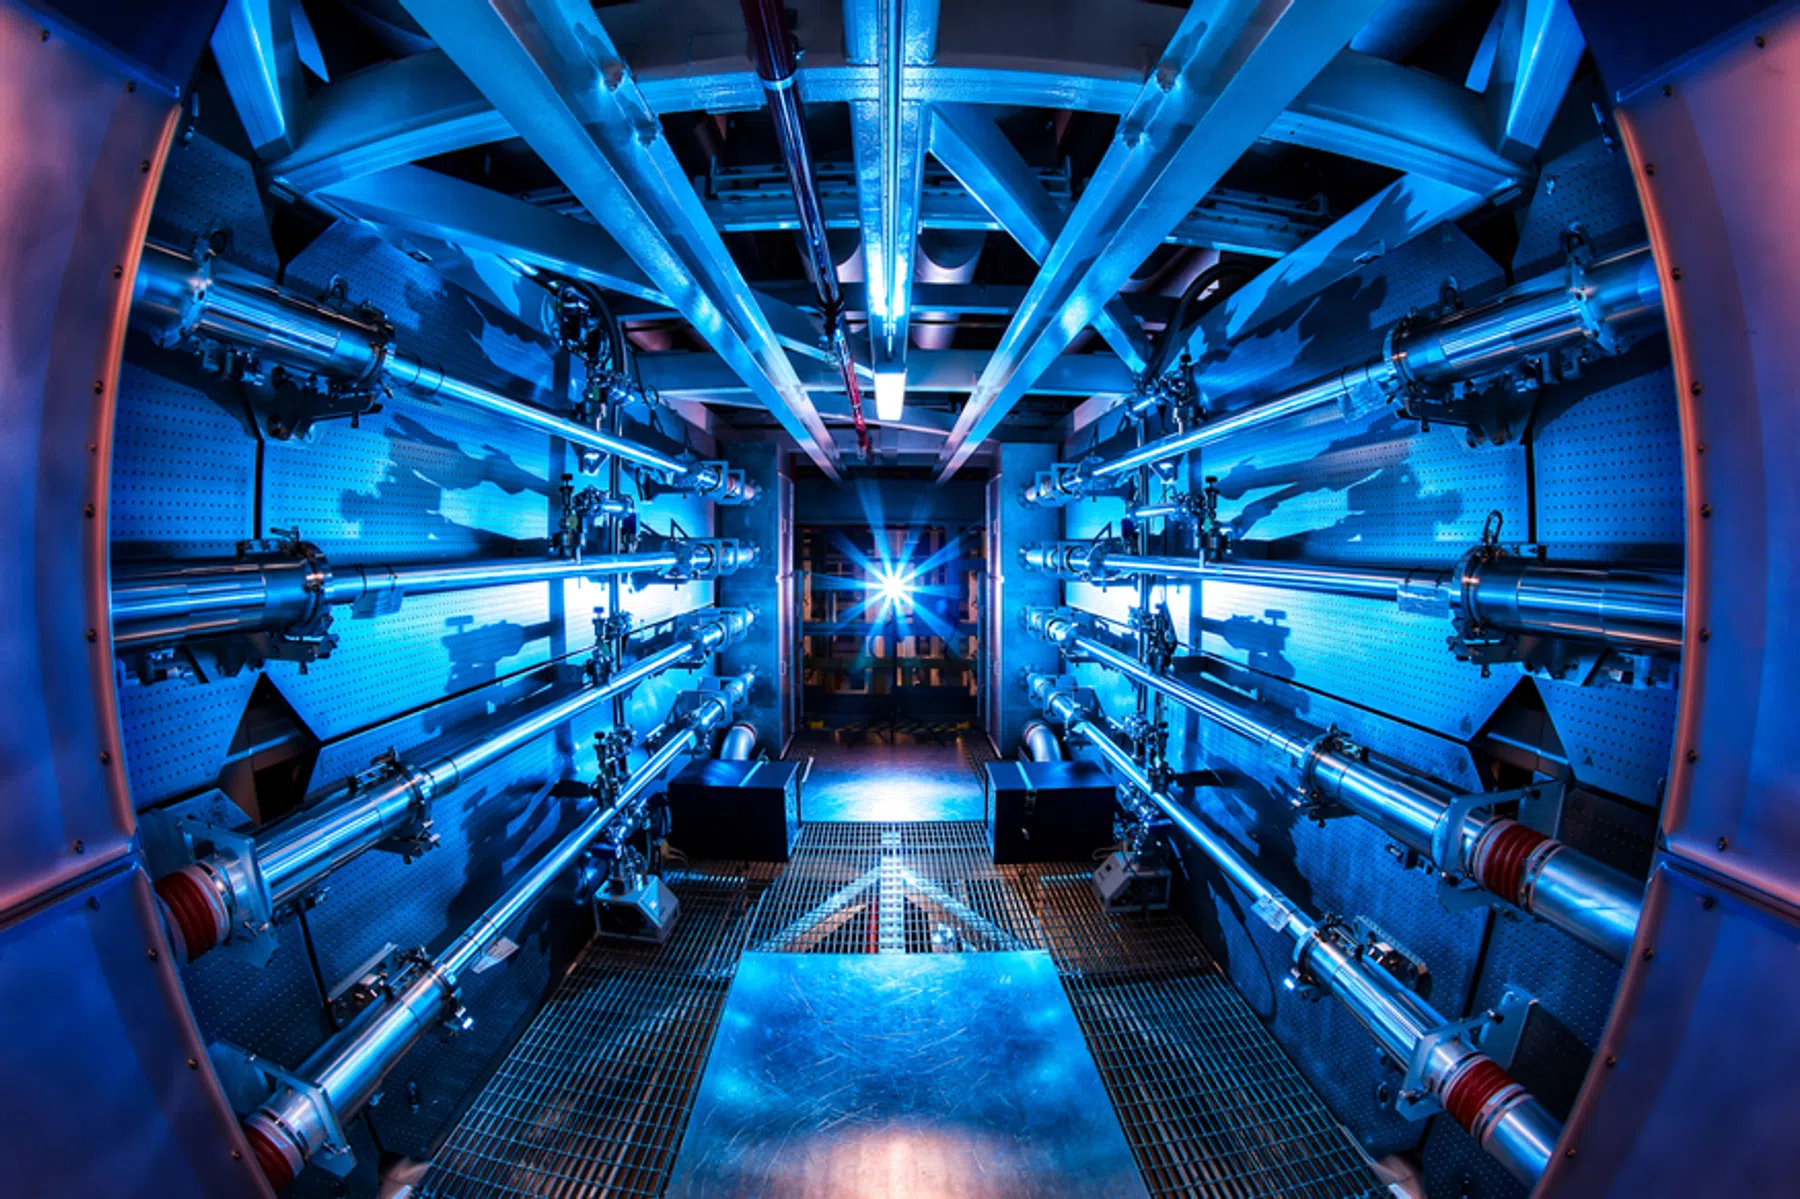 Dit kernfusiebedrijf heeft 100 miljoen dollar opgehaald voor commerciële reactor